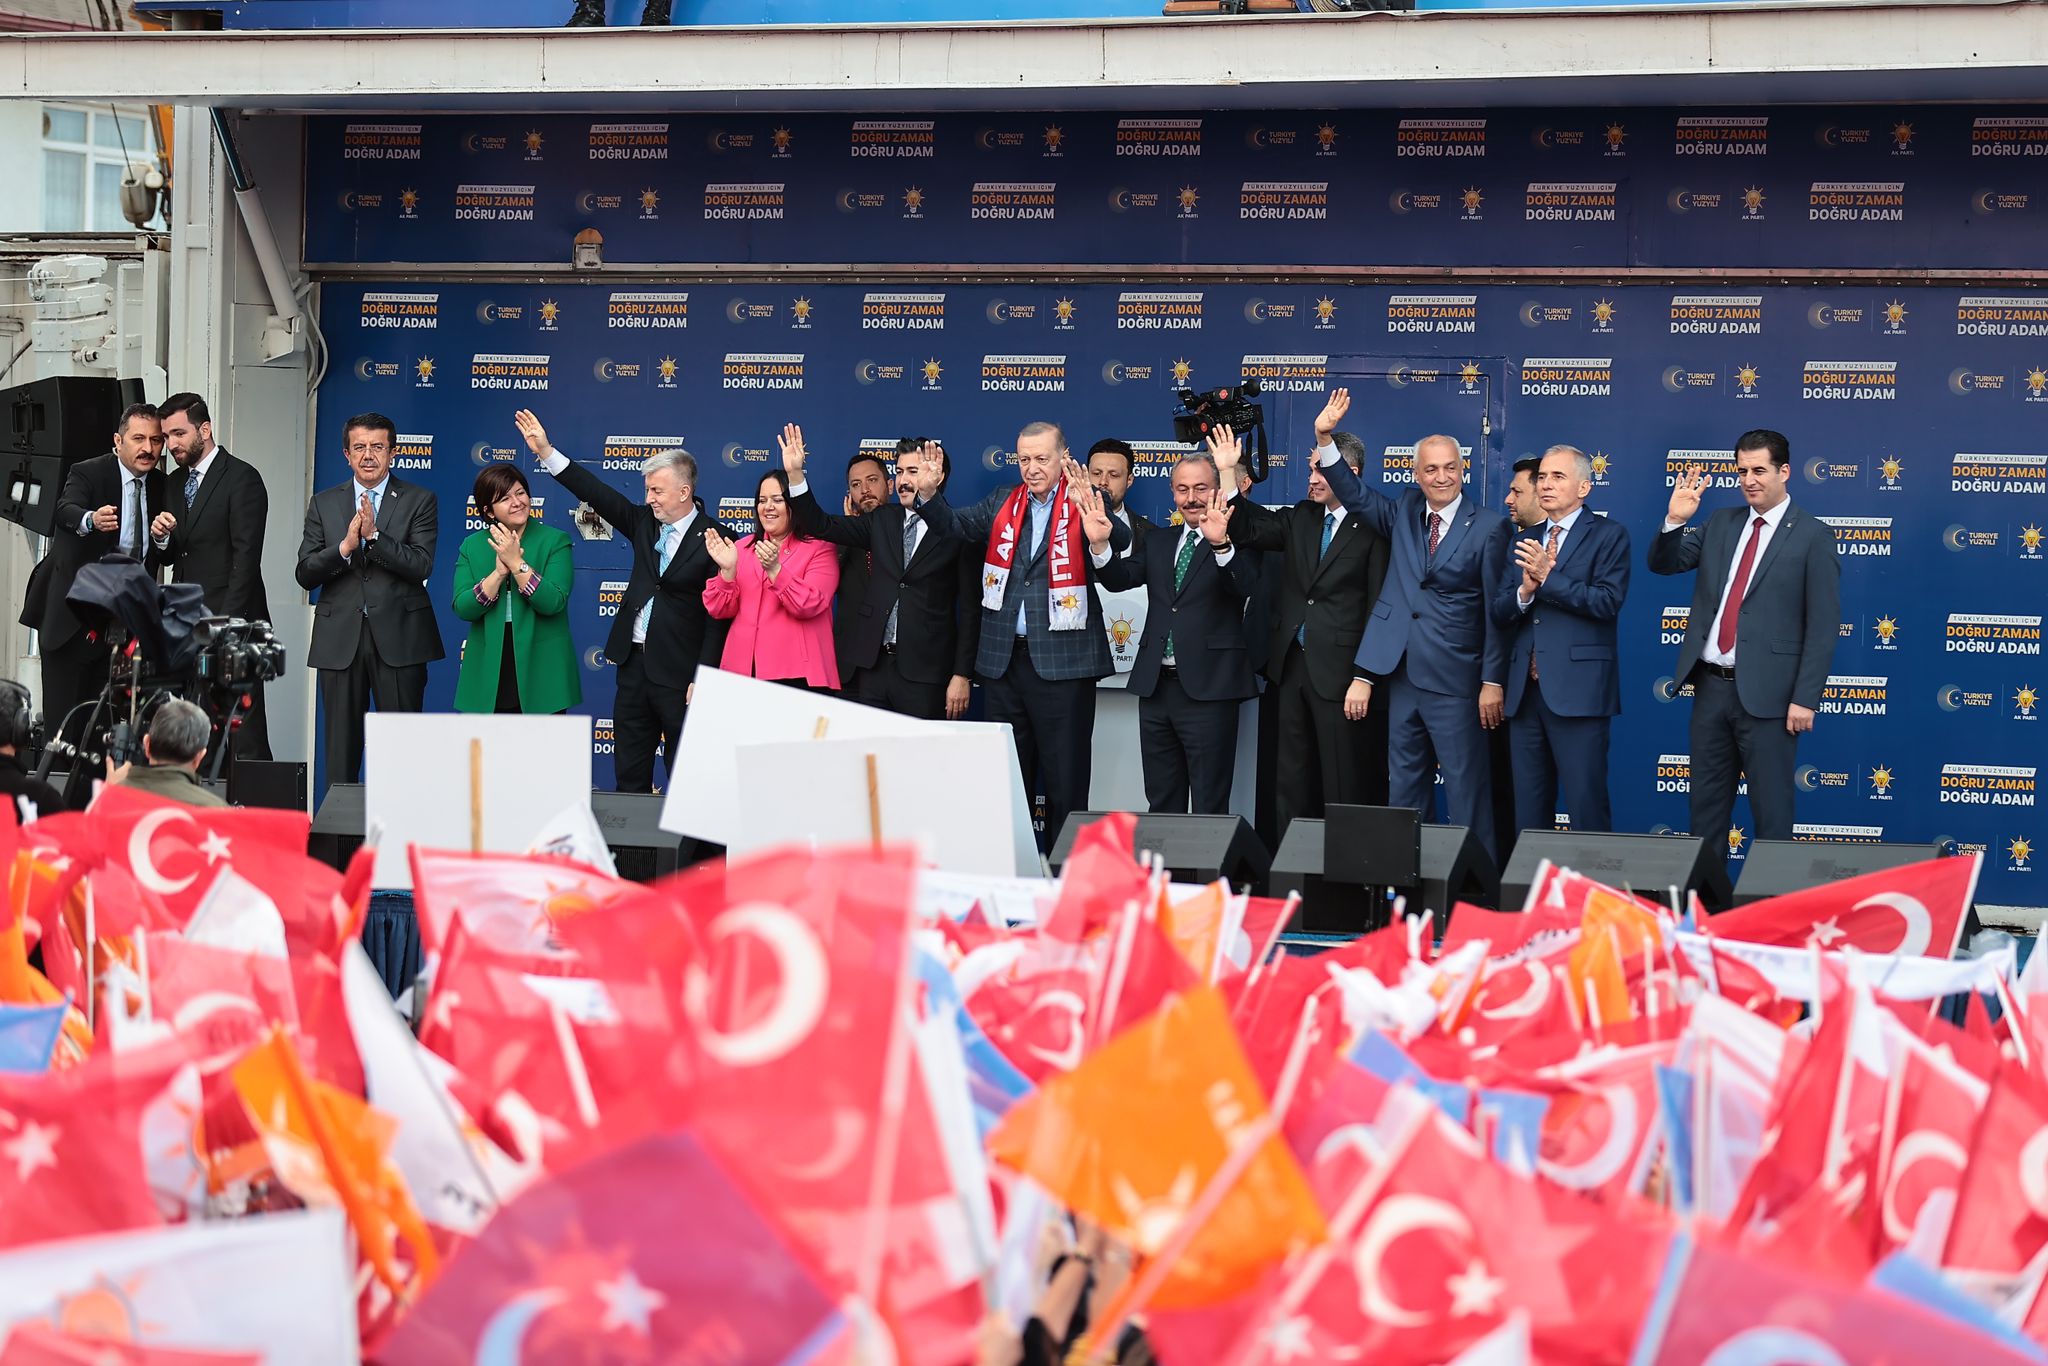 AK Parti Denizli İl Başkanı Yücel Güngör,14 Mayıs seçimleri öncesi kente gelen Cumhurbaşkanı Recep Tayip Erdoğan'ı bağrına basan hemşehrilerine teşekkür etti.